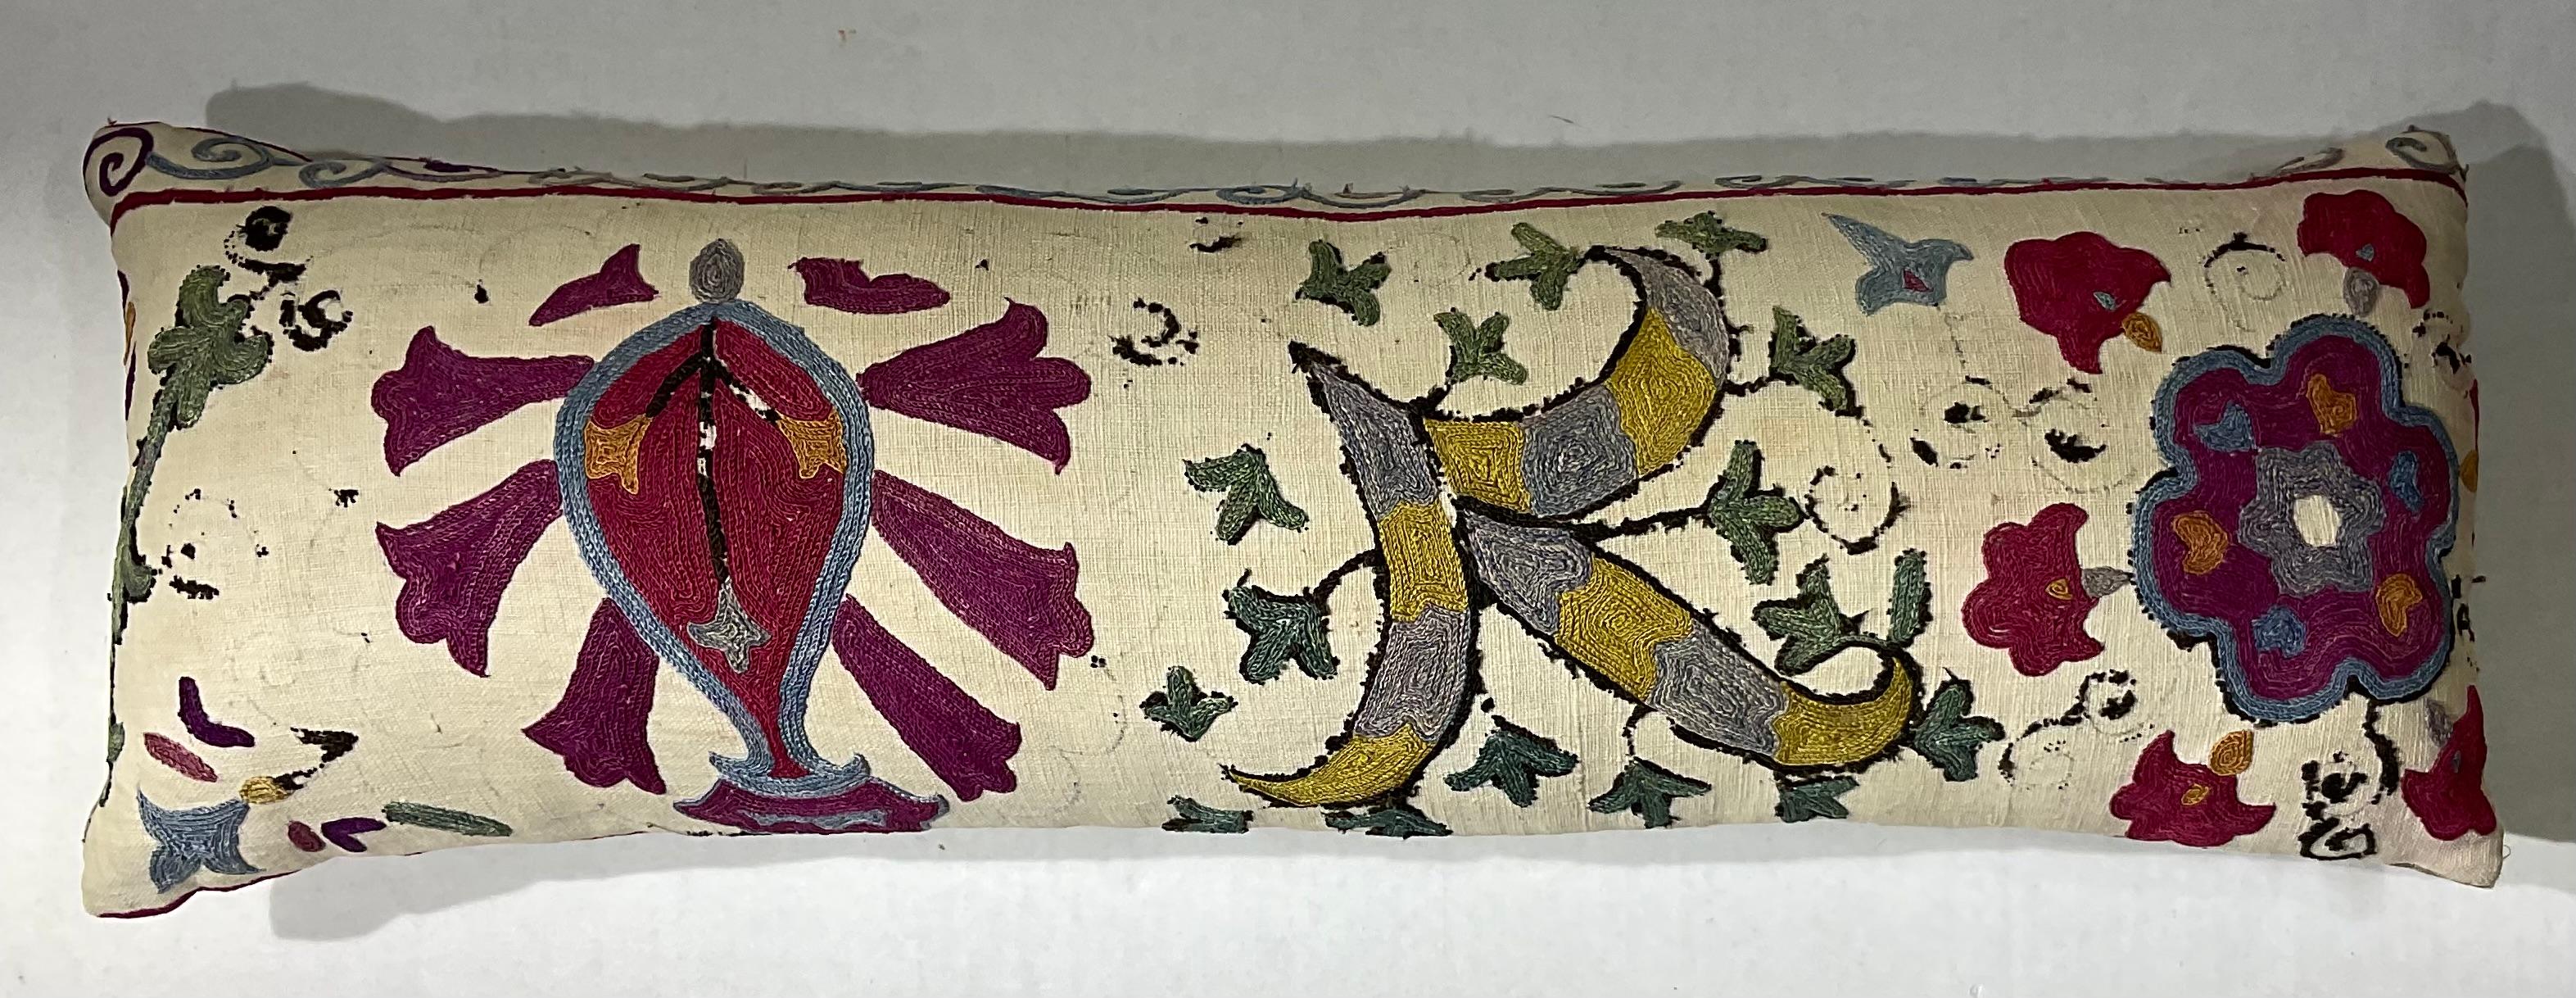 Coussin simple en tissu Suzani ancien, brodé à la main sur soie, avec de magnifiques motifs de vignes et de fleurs. Insert de qualité fraîche, support en coton fin. Quelques broderies manquantes dues à l'âge et à l'oxydation, quelques taches de